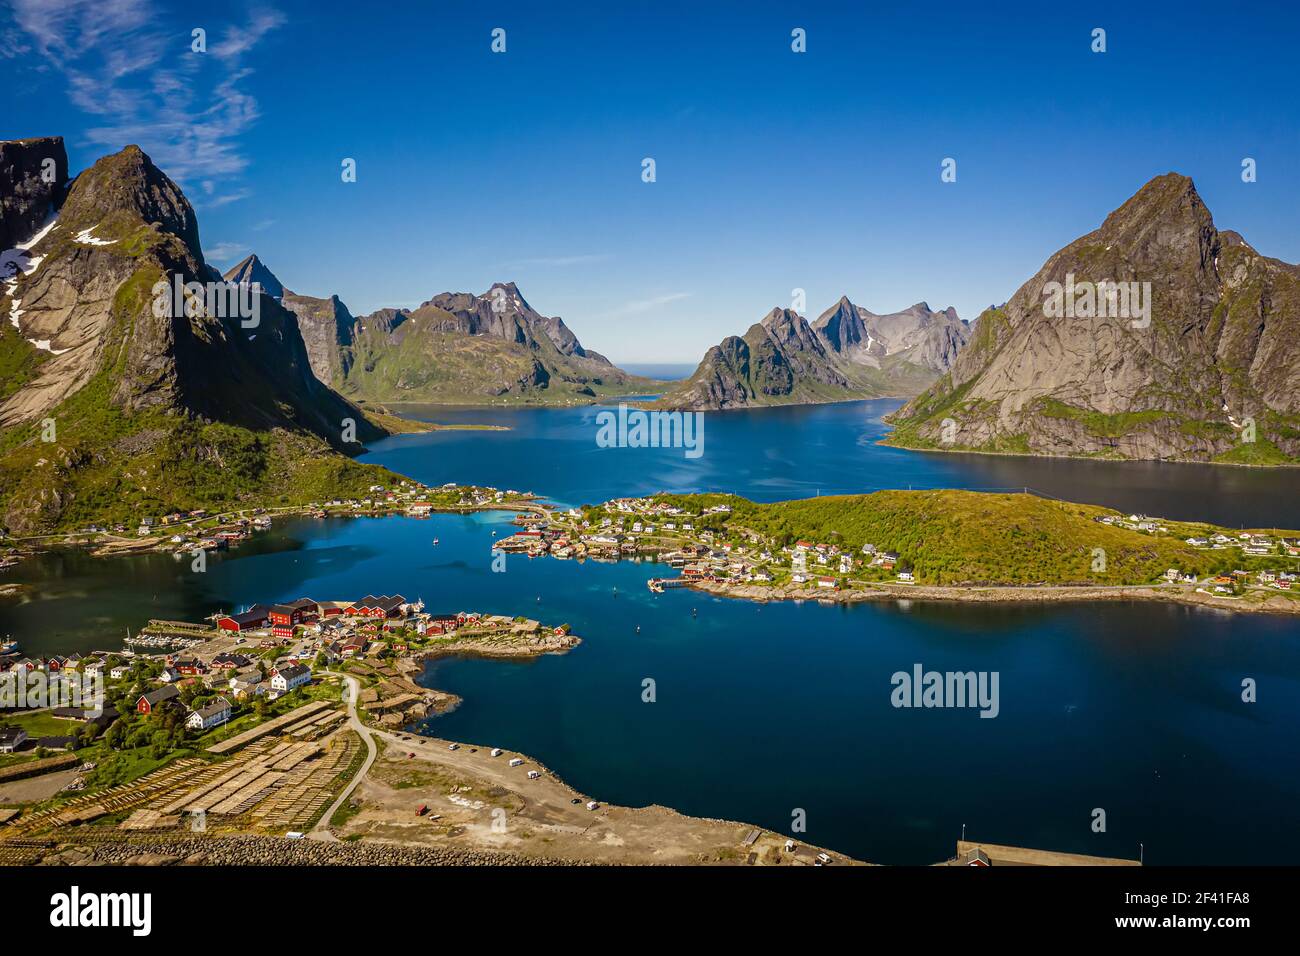 Panorama Lofoten ist ein Archipel in der Grafschaft Nordland, Norwegen. Ist bekannt für eine unverwechselbare Landschaft mit dramatischen Bergen und Gipfeln, offenem Meer und geschützten Buchten, Stränden und unberührten Ländern. Stockfoto